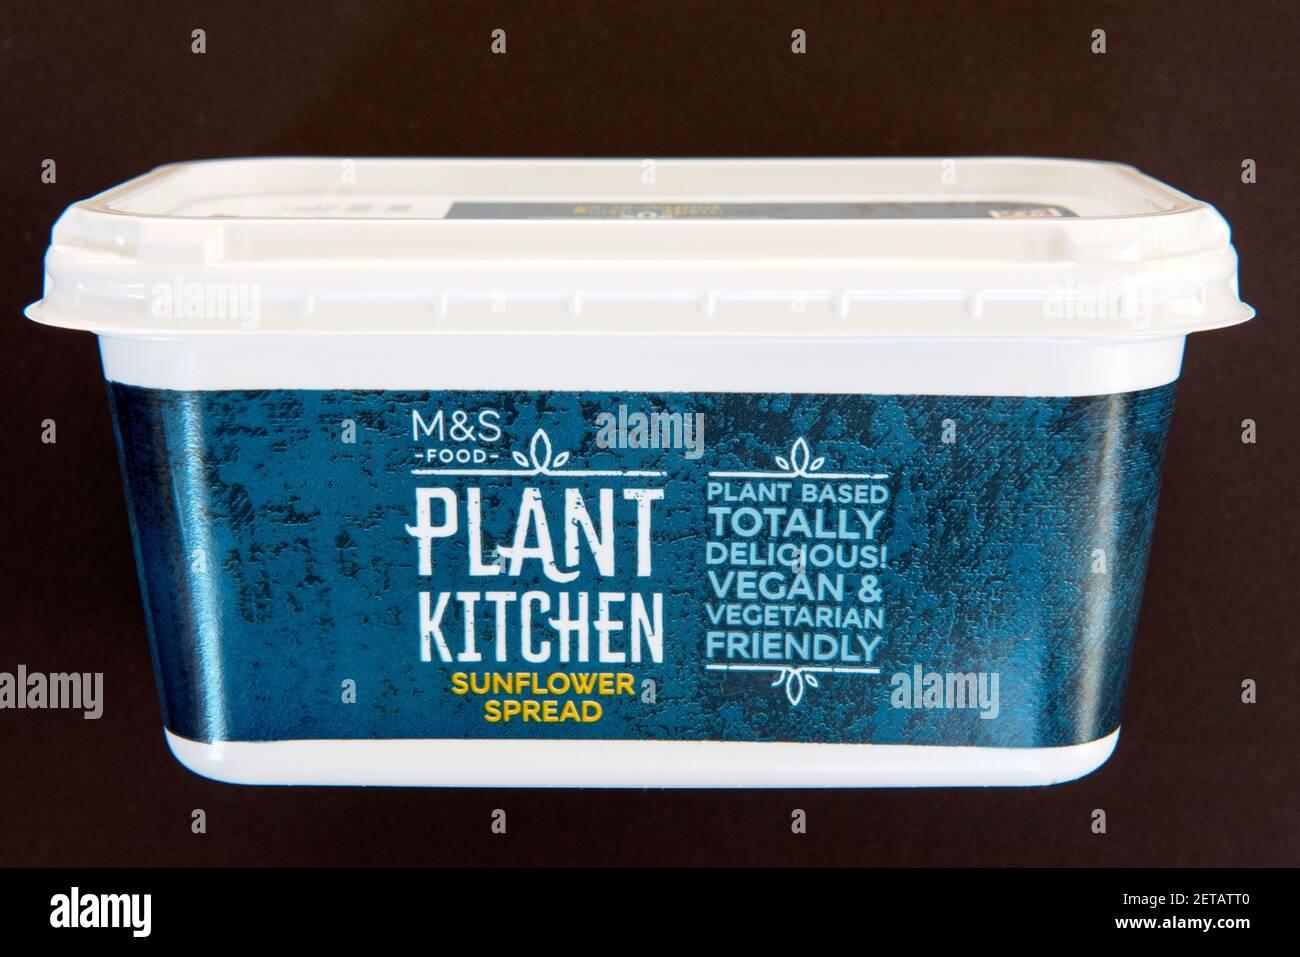 Tina de M&S planta de alimentos Cocina Vegan girasol extender lácteos margarina libre aislada en la parte trasera negra Foto de stock